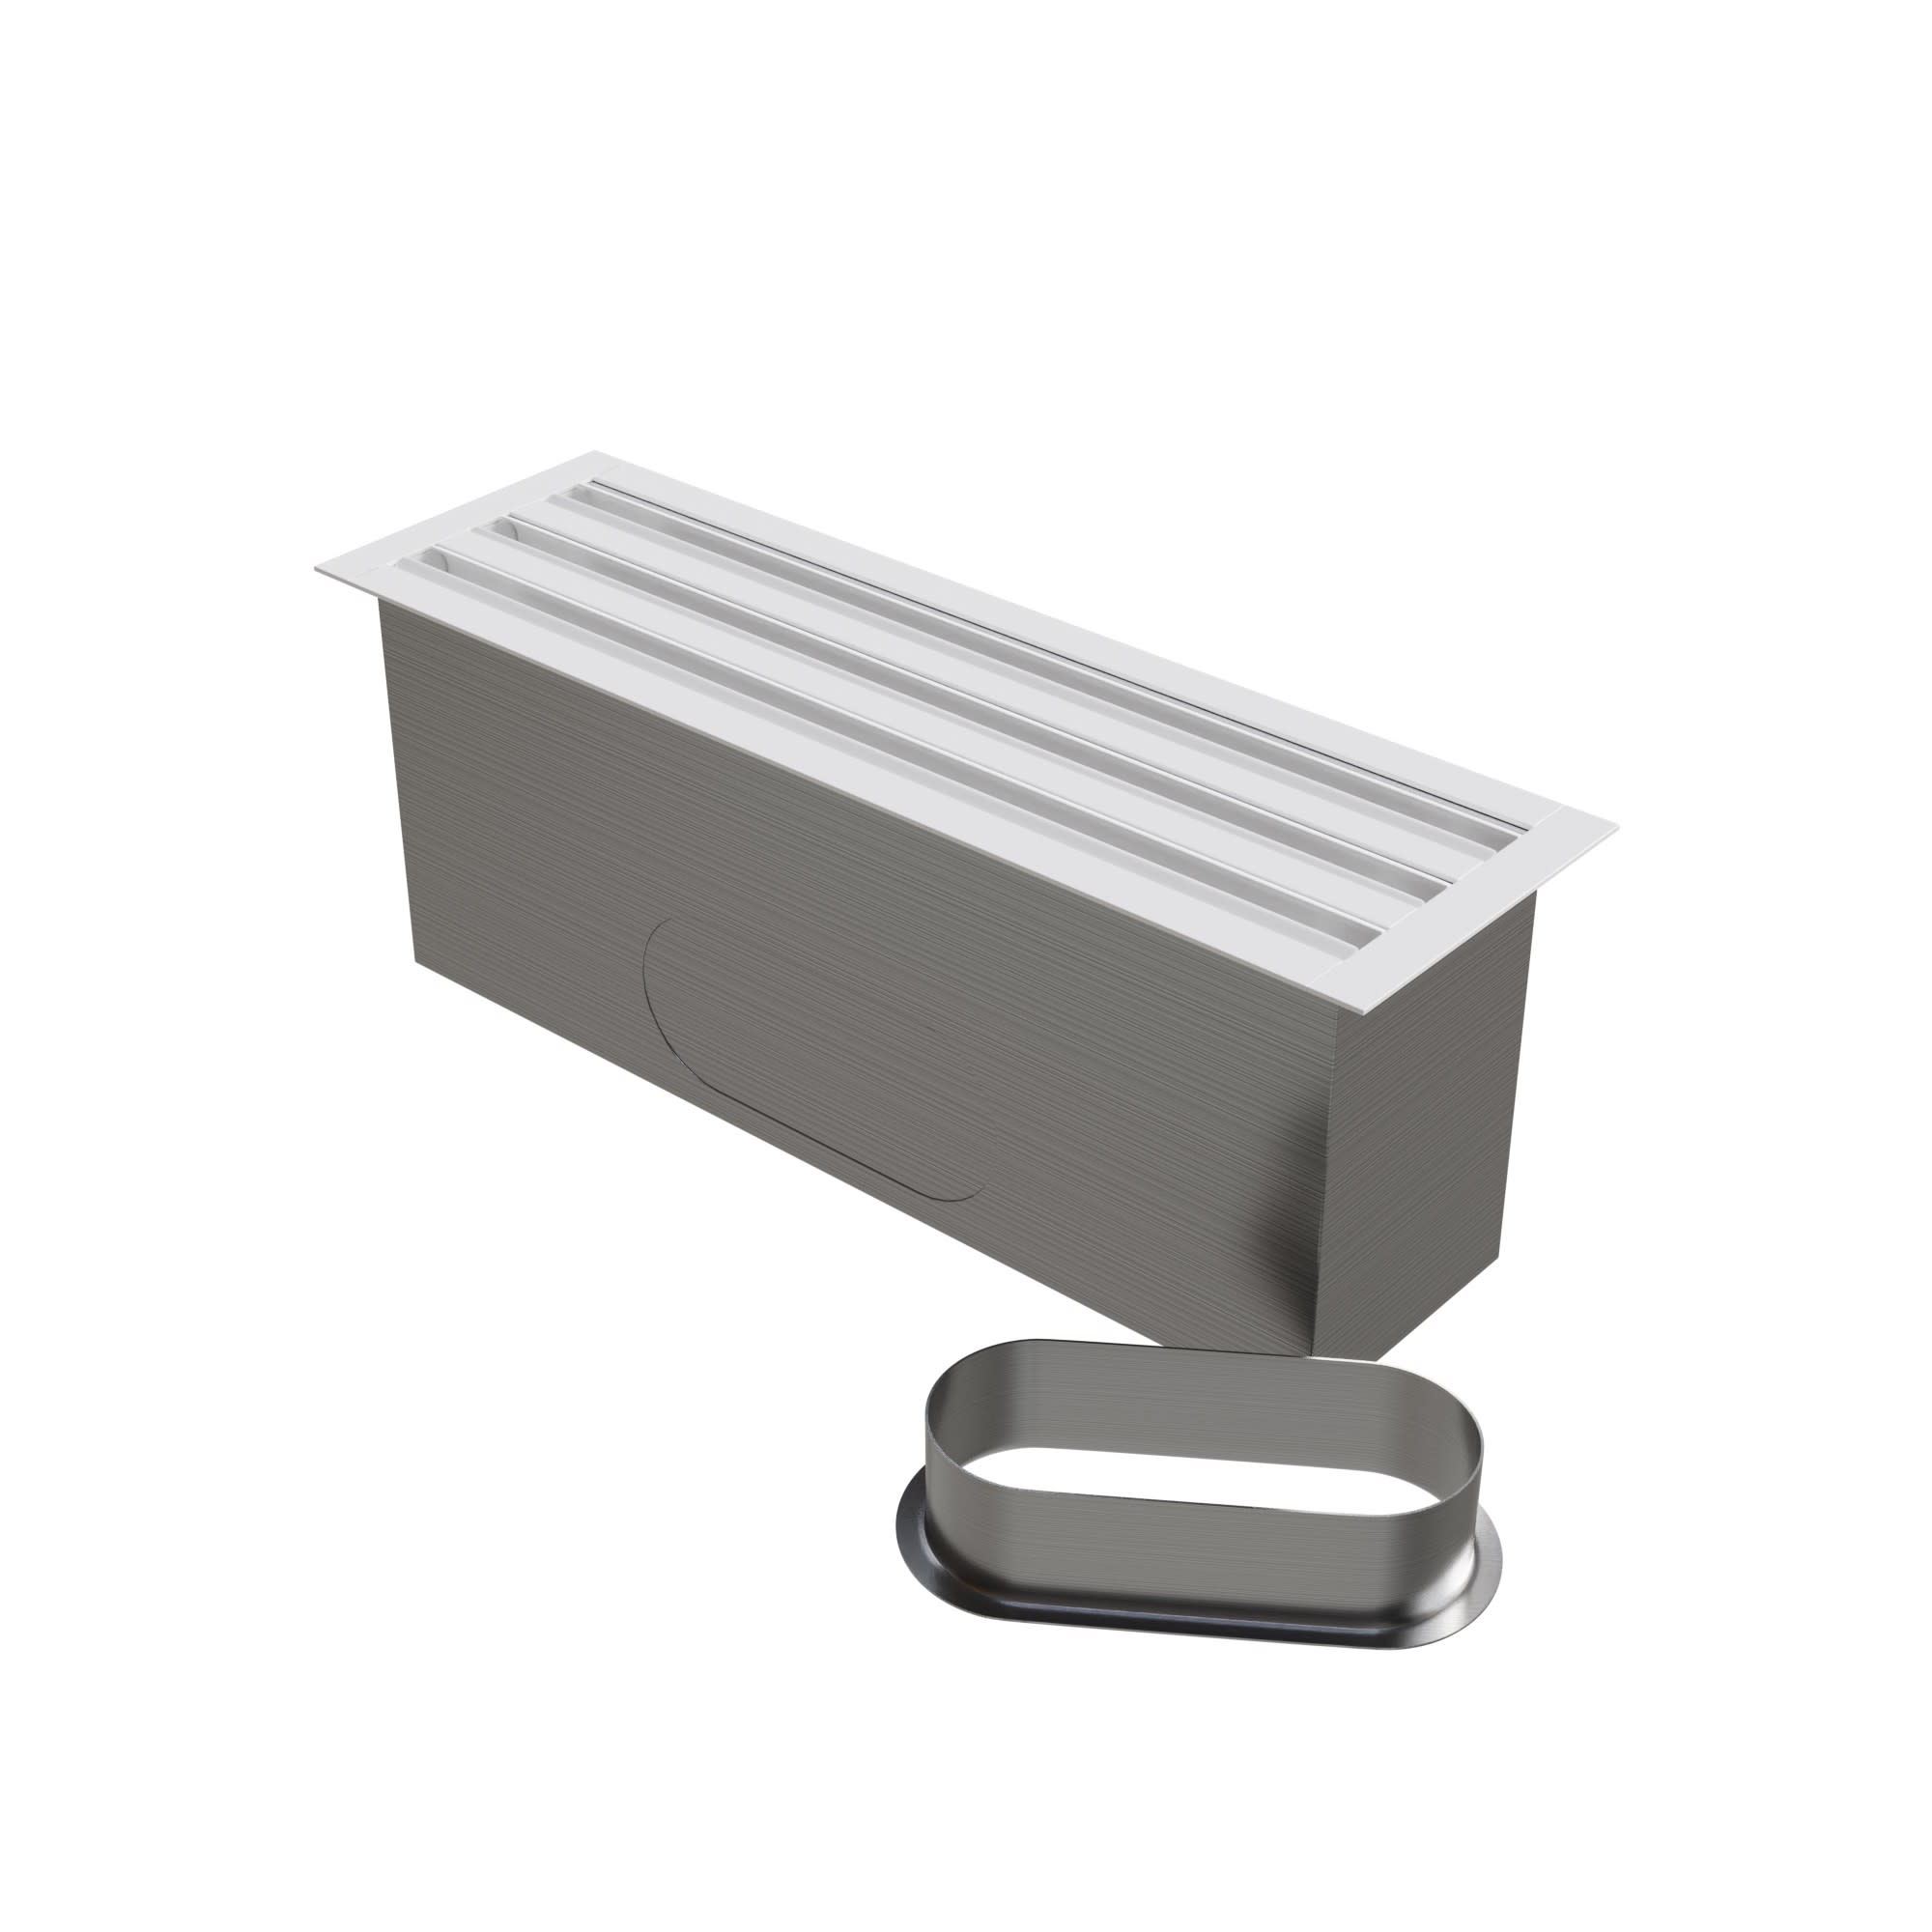 BAILLINDUSTRIE - Diffuseur linéaire 3 fentes en aluminium blanc mate de 500 x 150 mm